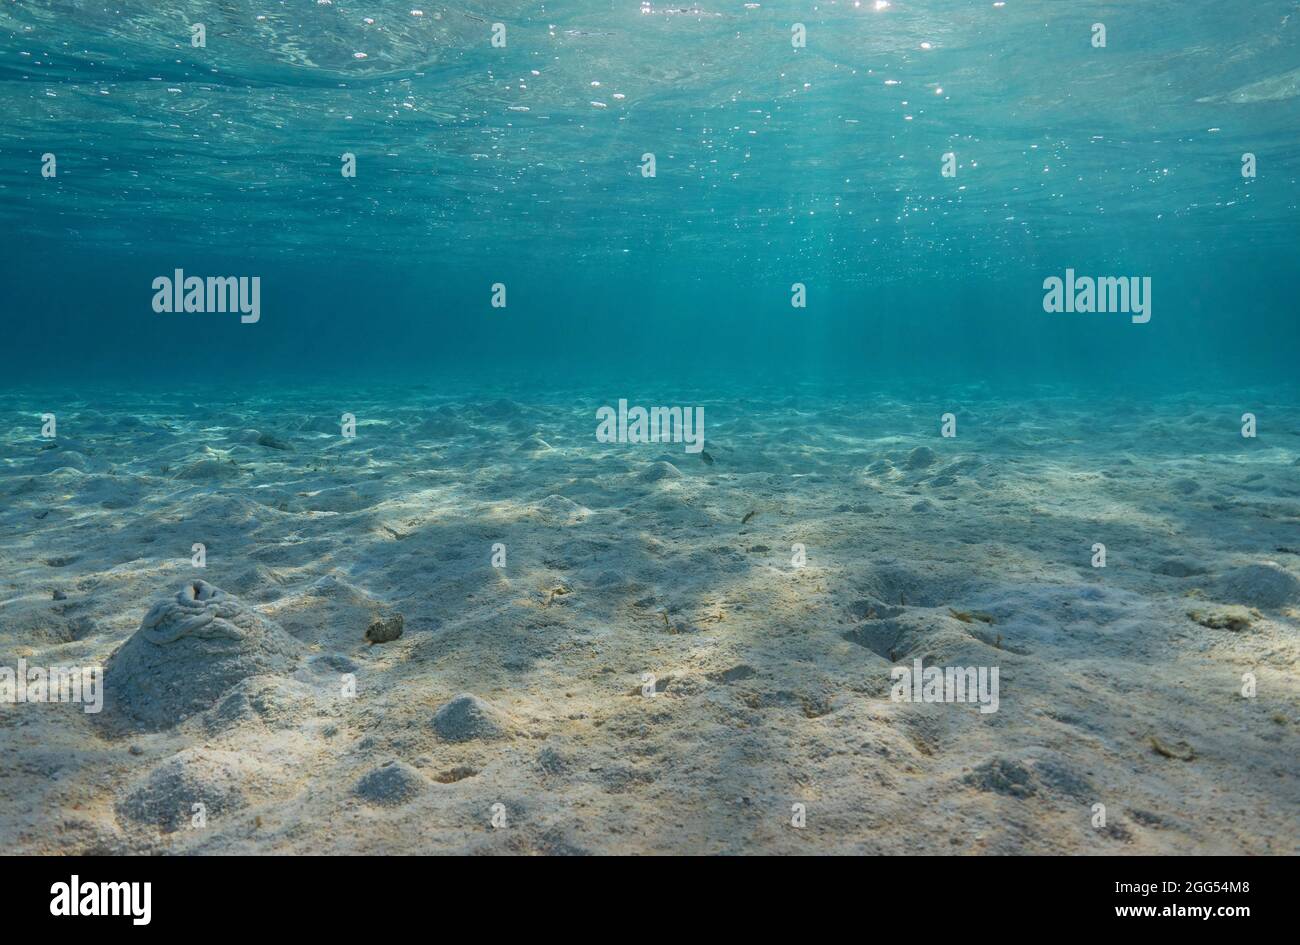 Paisajes marinos naturales, arena en el fondo del océano y superficie de agua con luz solar, Bora Bora, Océano Pacífico, Polinesia Francesa Foto de stock